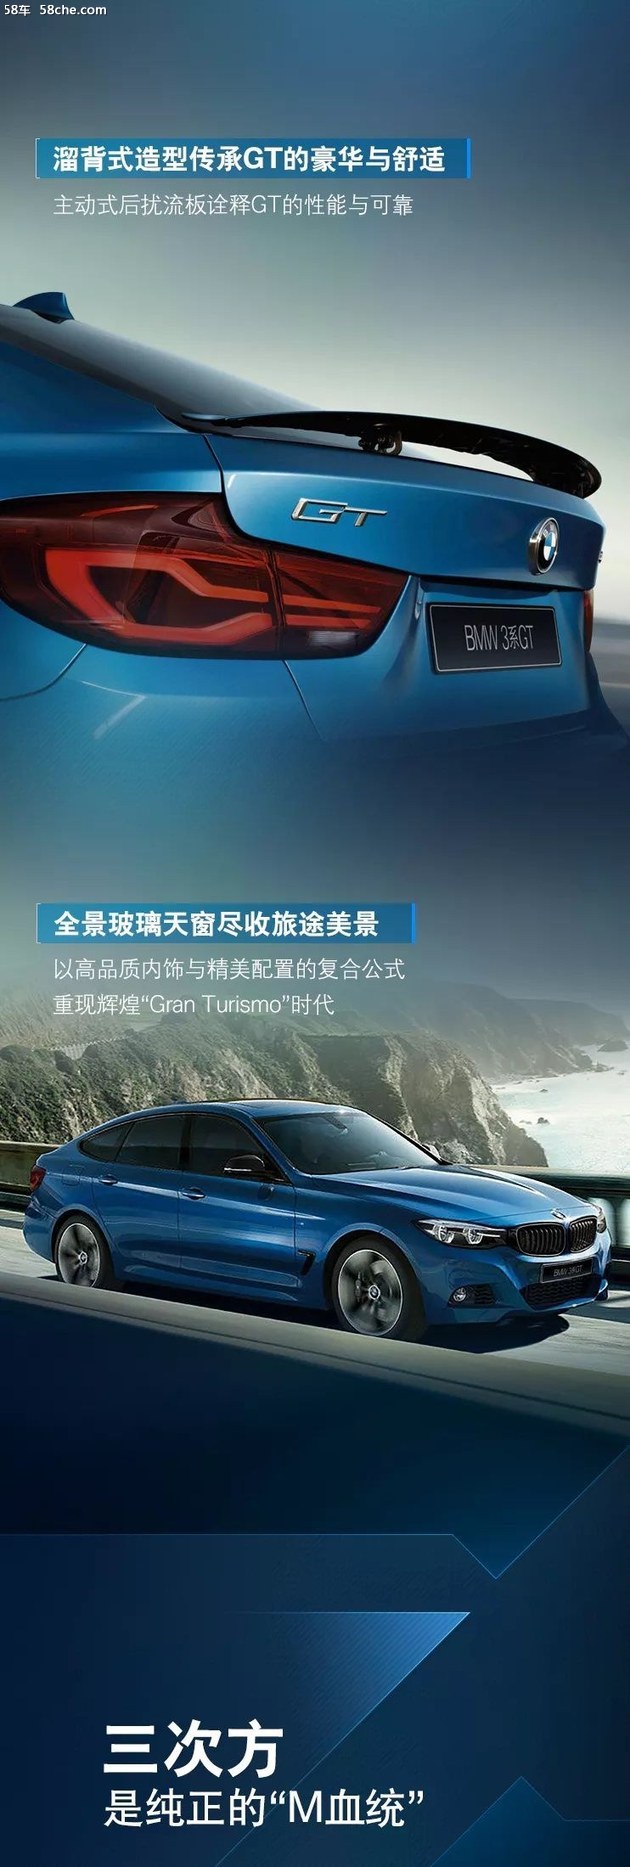 创新与责任丨全新BMW 3系GT 携礼来袭！